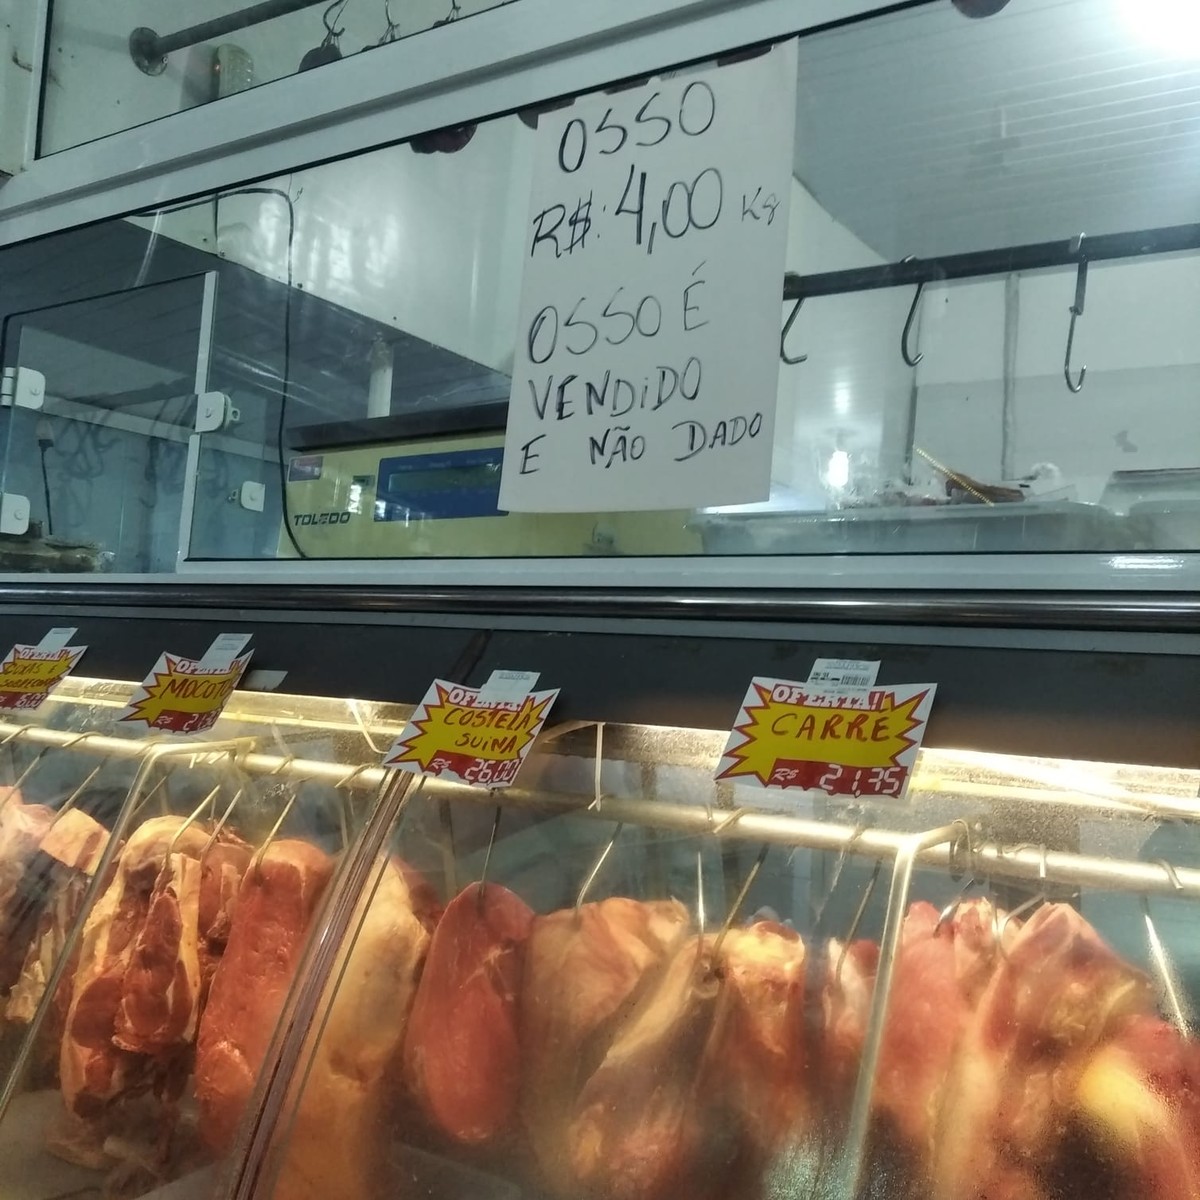 Osso é vendido e não dado': alta no preço da carne bovina reduz